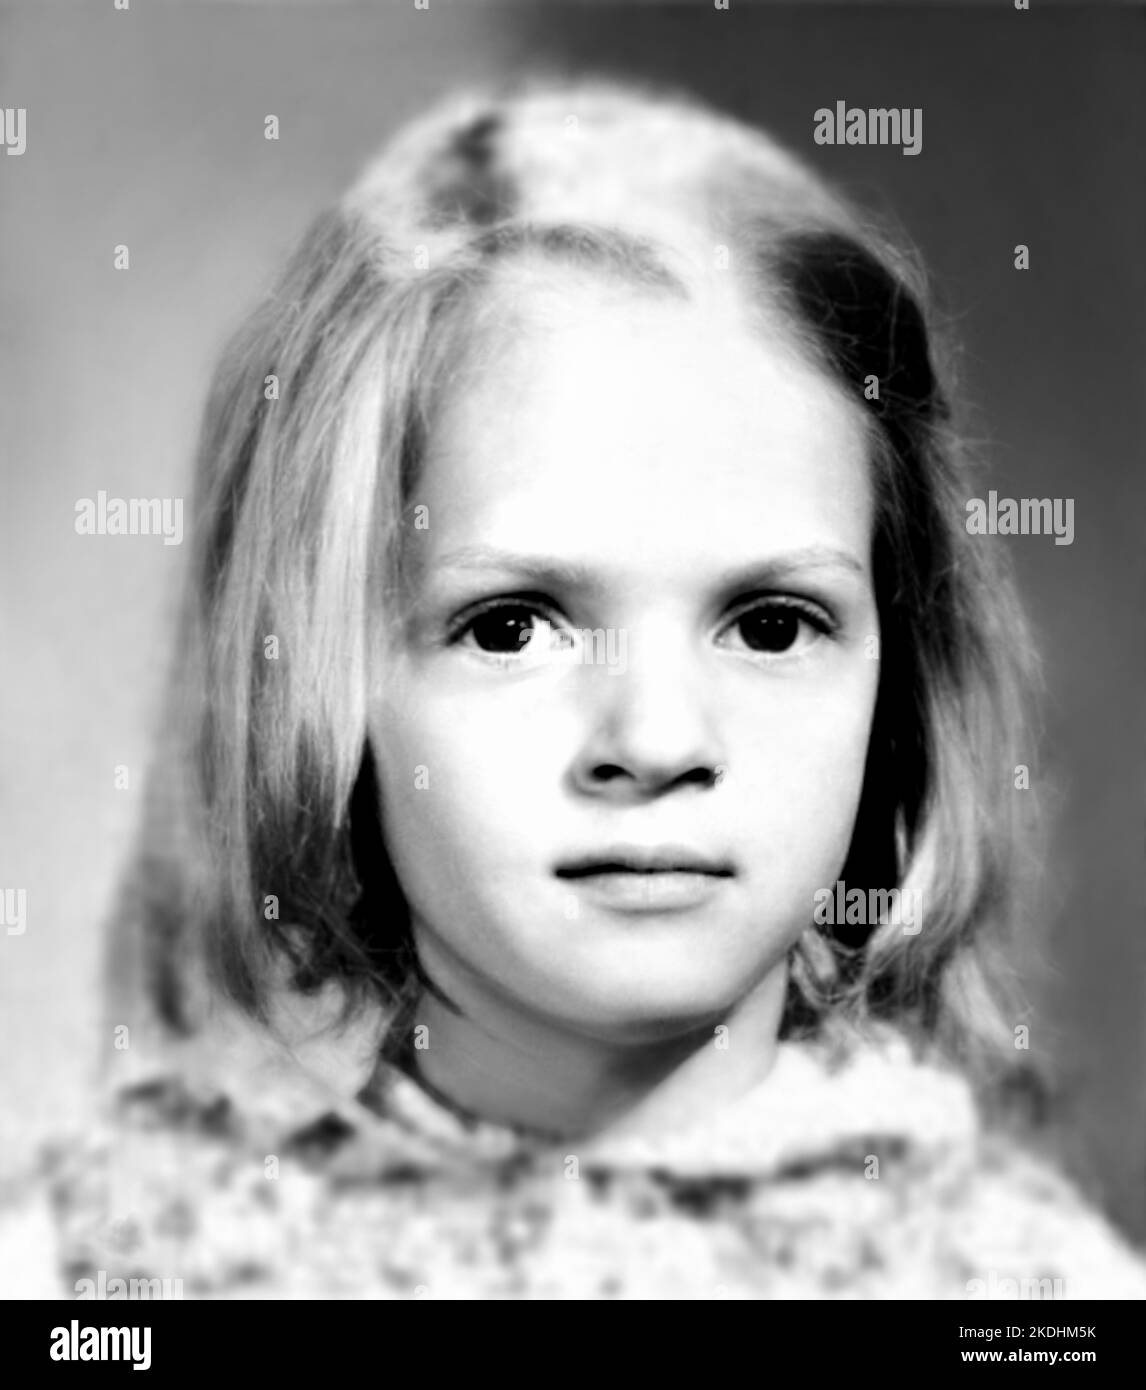 1975 , BOSTON , USA : The american actress UMA THURMAN  ( born 29 april 1970 ) when was a young girl aged 5 . Unknown photographer. - HISTORY - FOTO STORICHE - ATTORE - MOVIE - CINEMA - personalità da giovani  da giovane - personality personalities when was young - INFANZIA - CHILDHOOD - BAMBINO - BAMBINI  --- ARCHIVIO GBB Stock Photo